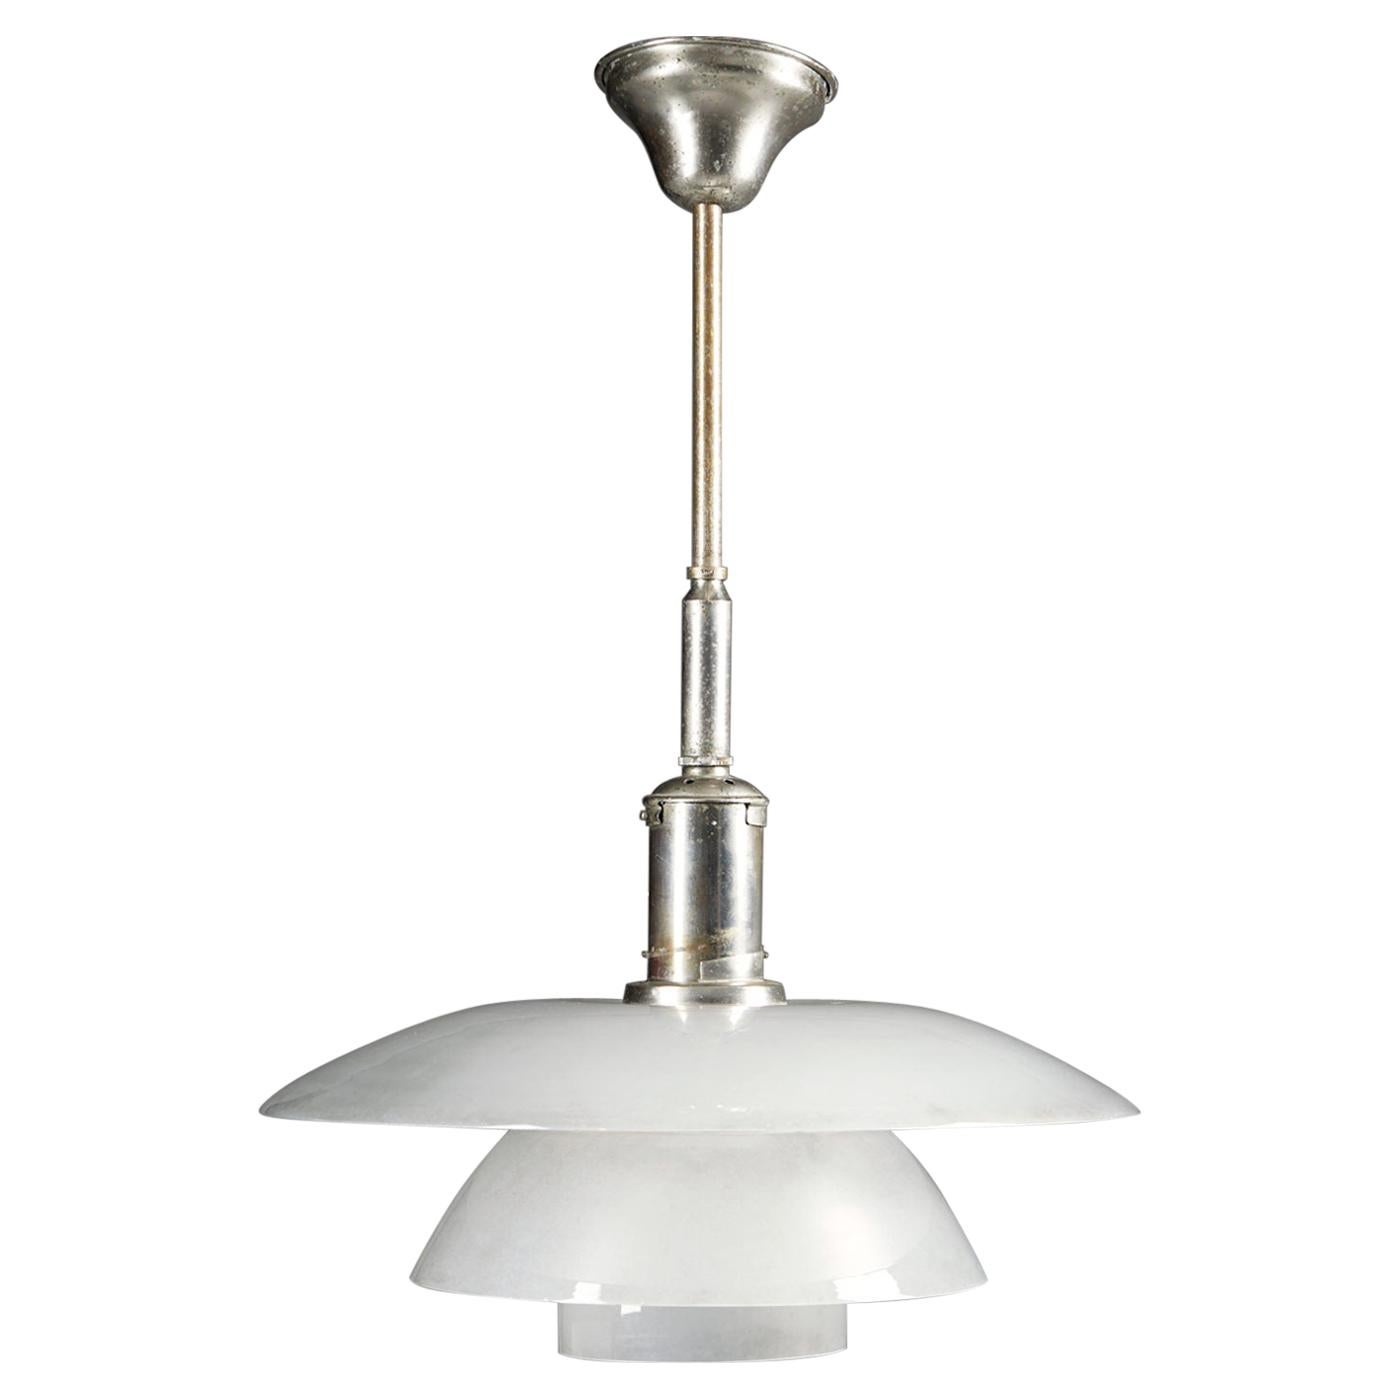 Ceiling Lamp PH 4/4 Designed by Poul Henningsen for Louis Poulsen, Denmark, 1930